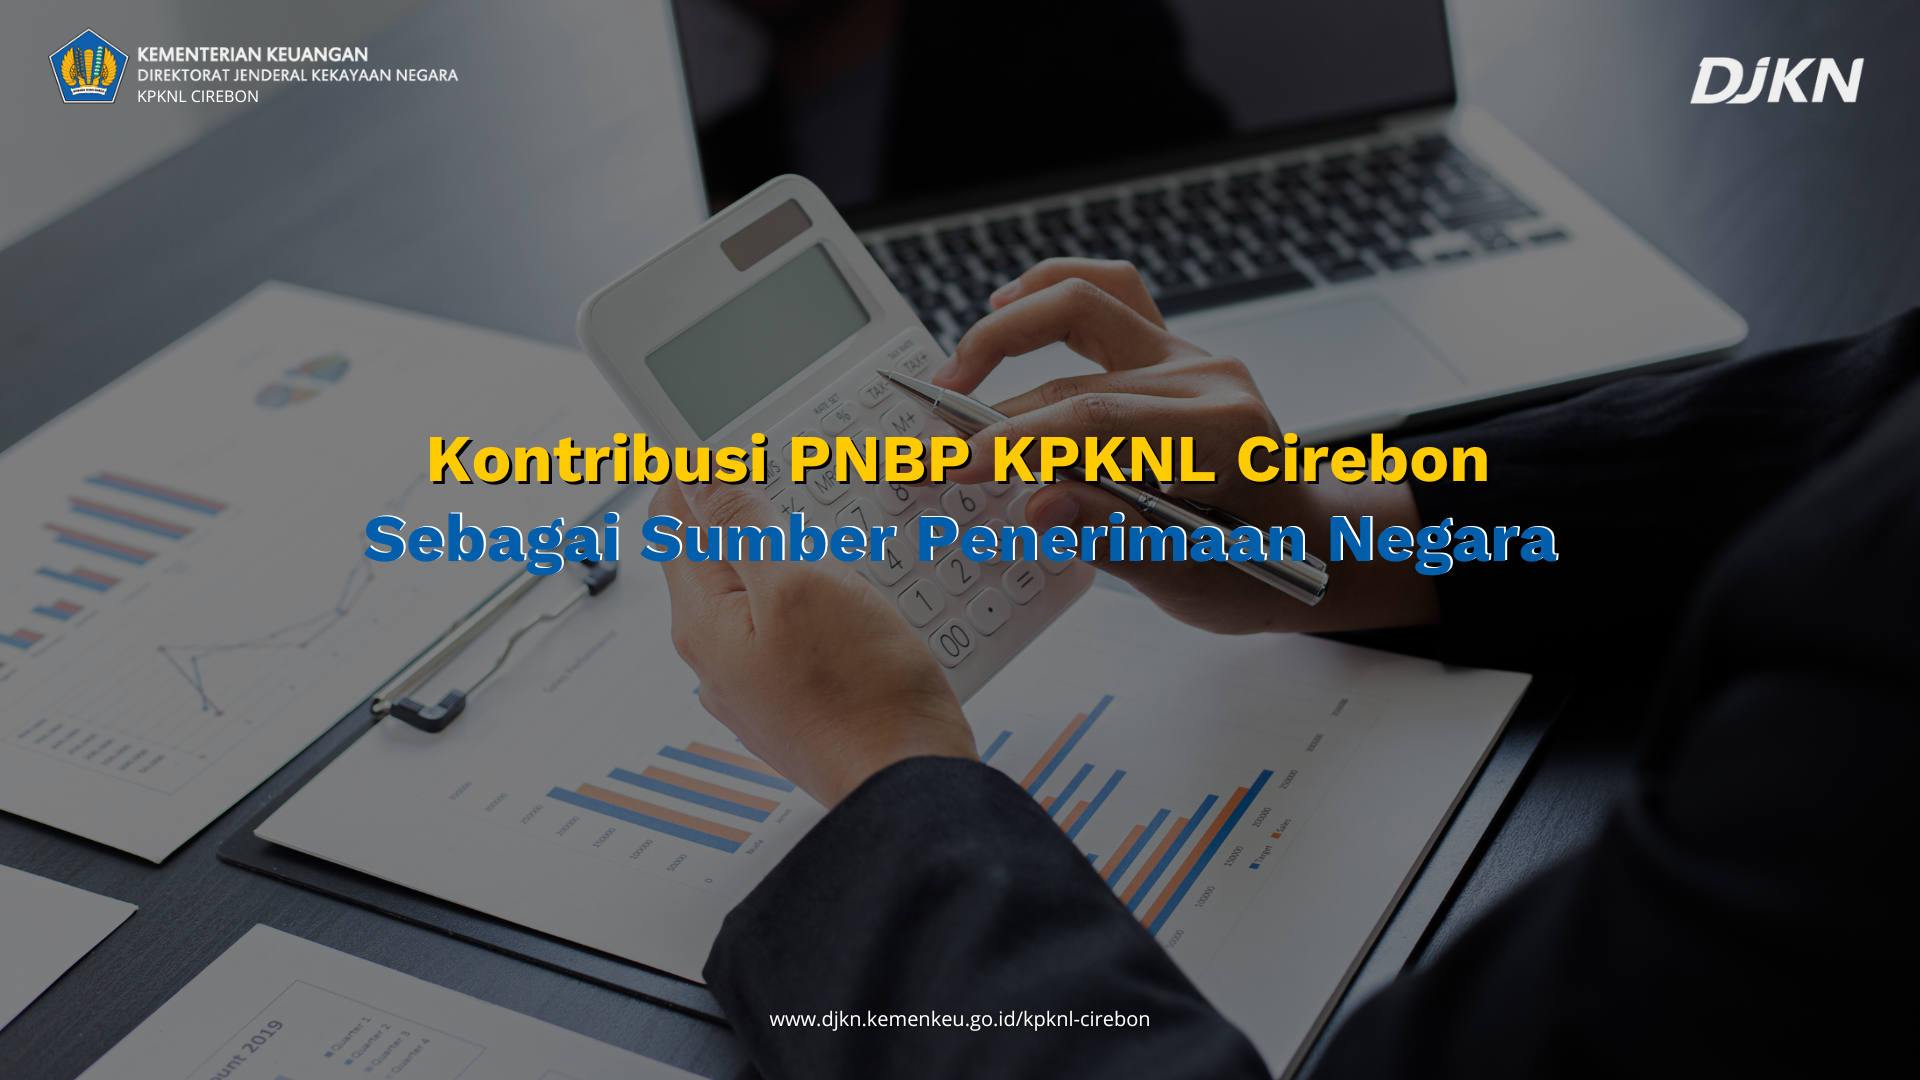 Kontribusi PNBP KPKNL Cirebon Sebagai Sumber Penerimaan Negara